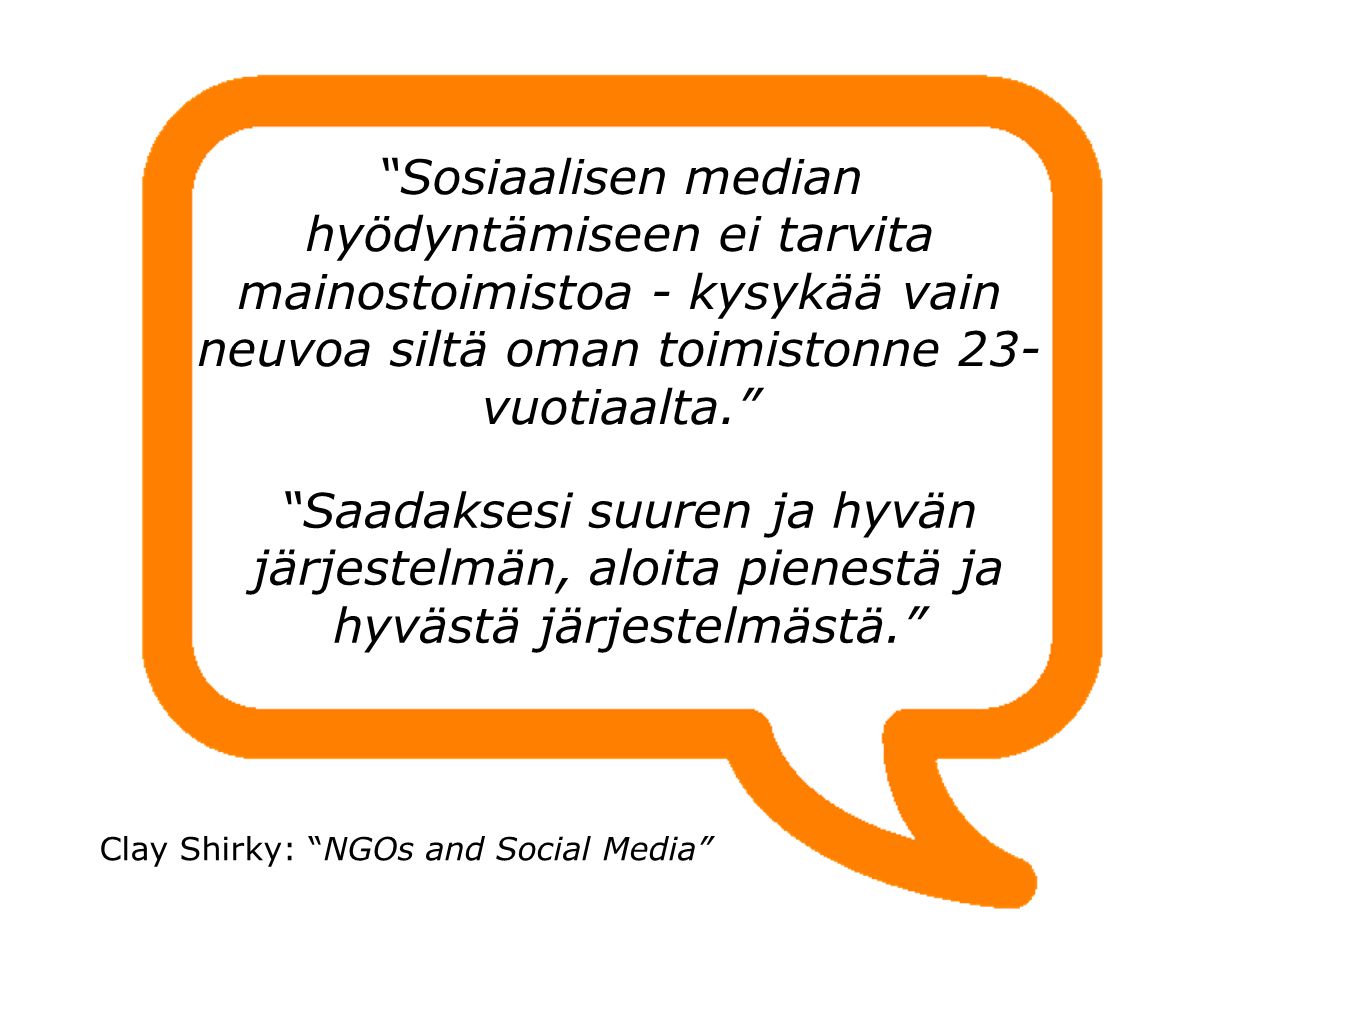 Sosiaalisen median hyödyntämiseen ei tarvita mainostoimistoa - kysykää vain neuvoa siltä oman toimistonne 23- vuotiaalta. Saadaksesi suuren ja hyvän järjestelmän, aloita pienestä ja hyvästä järjestelmästä. Clay Shirky: NGOs and Social Media